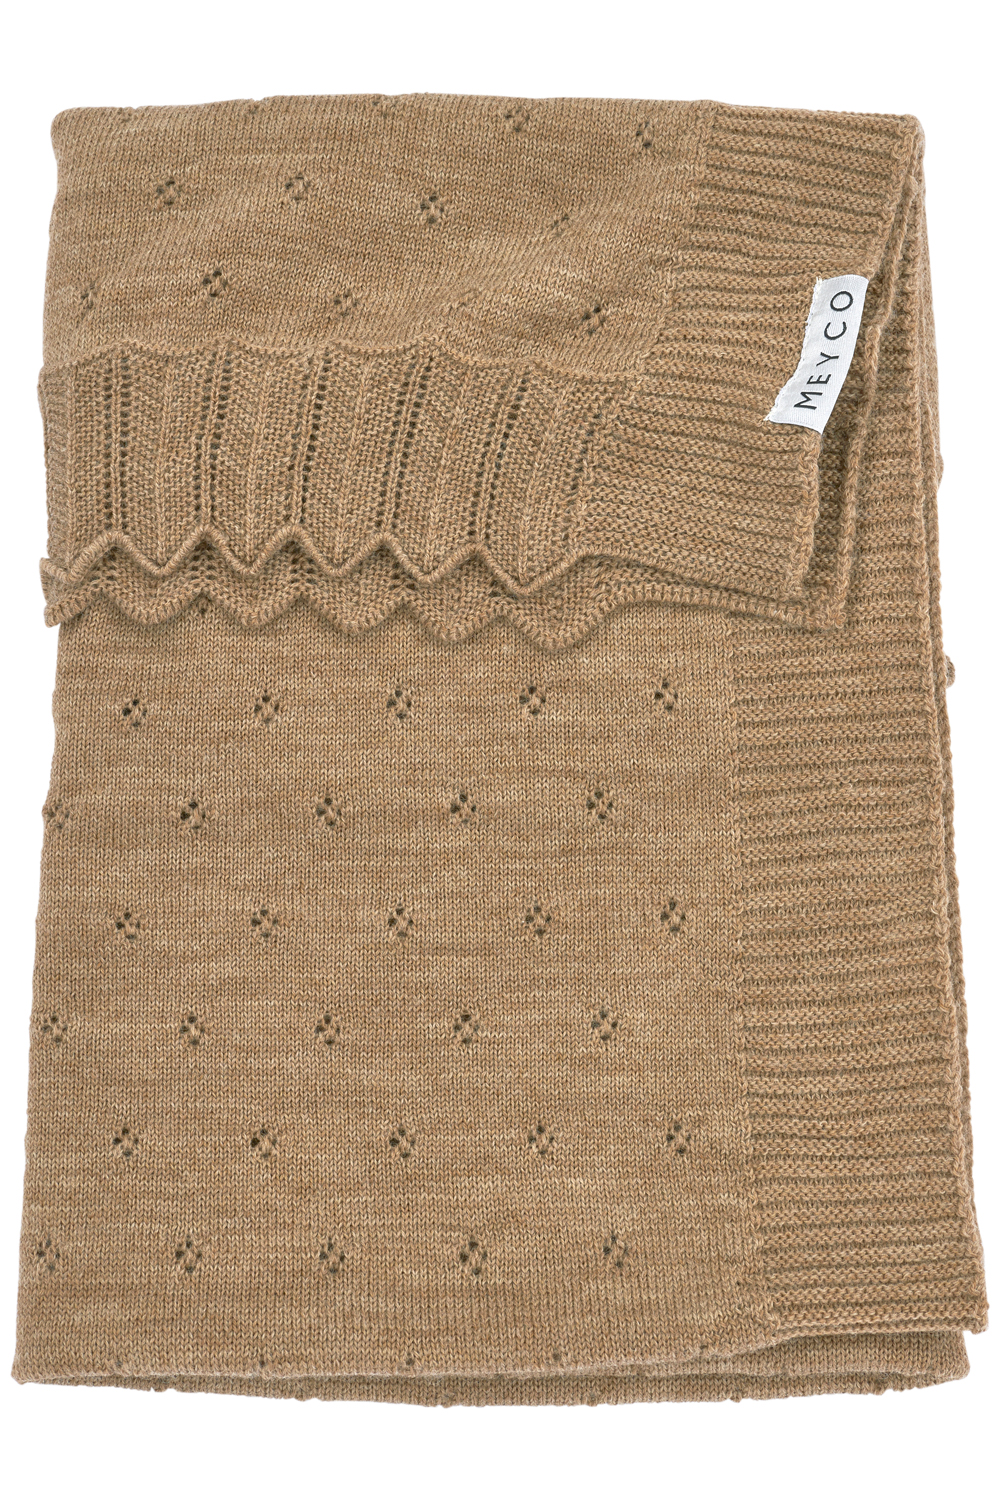 Crib bed blanket wool Ajour - toffee melange - 75x100cm